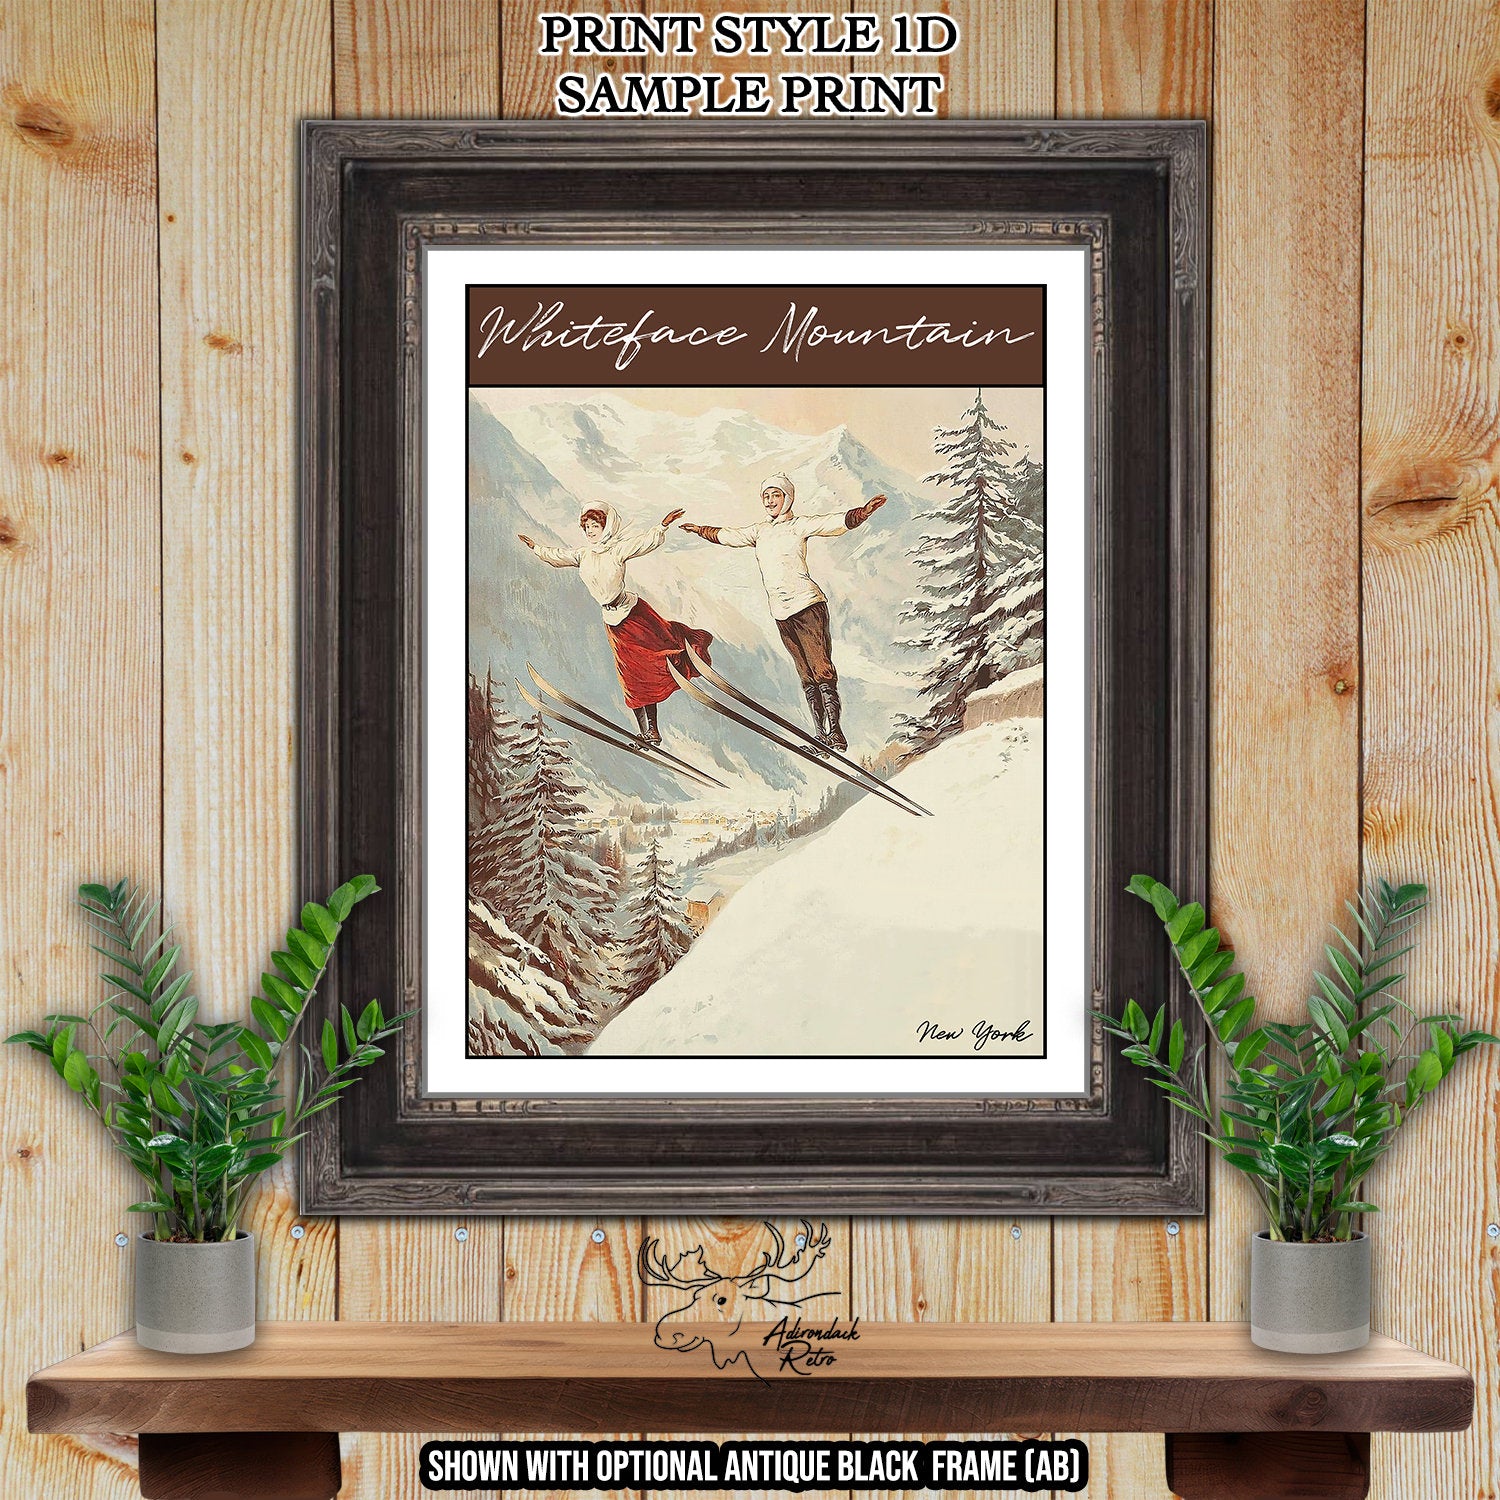 Cannon Mountain New Hampshire Retro Ski Resort Print